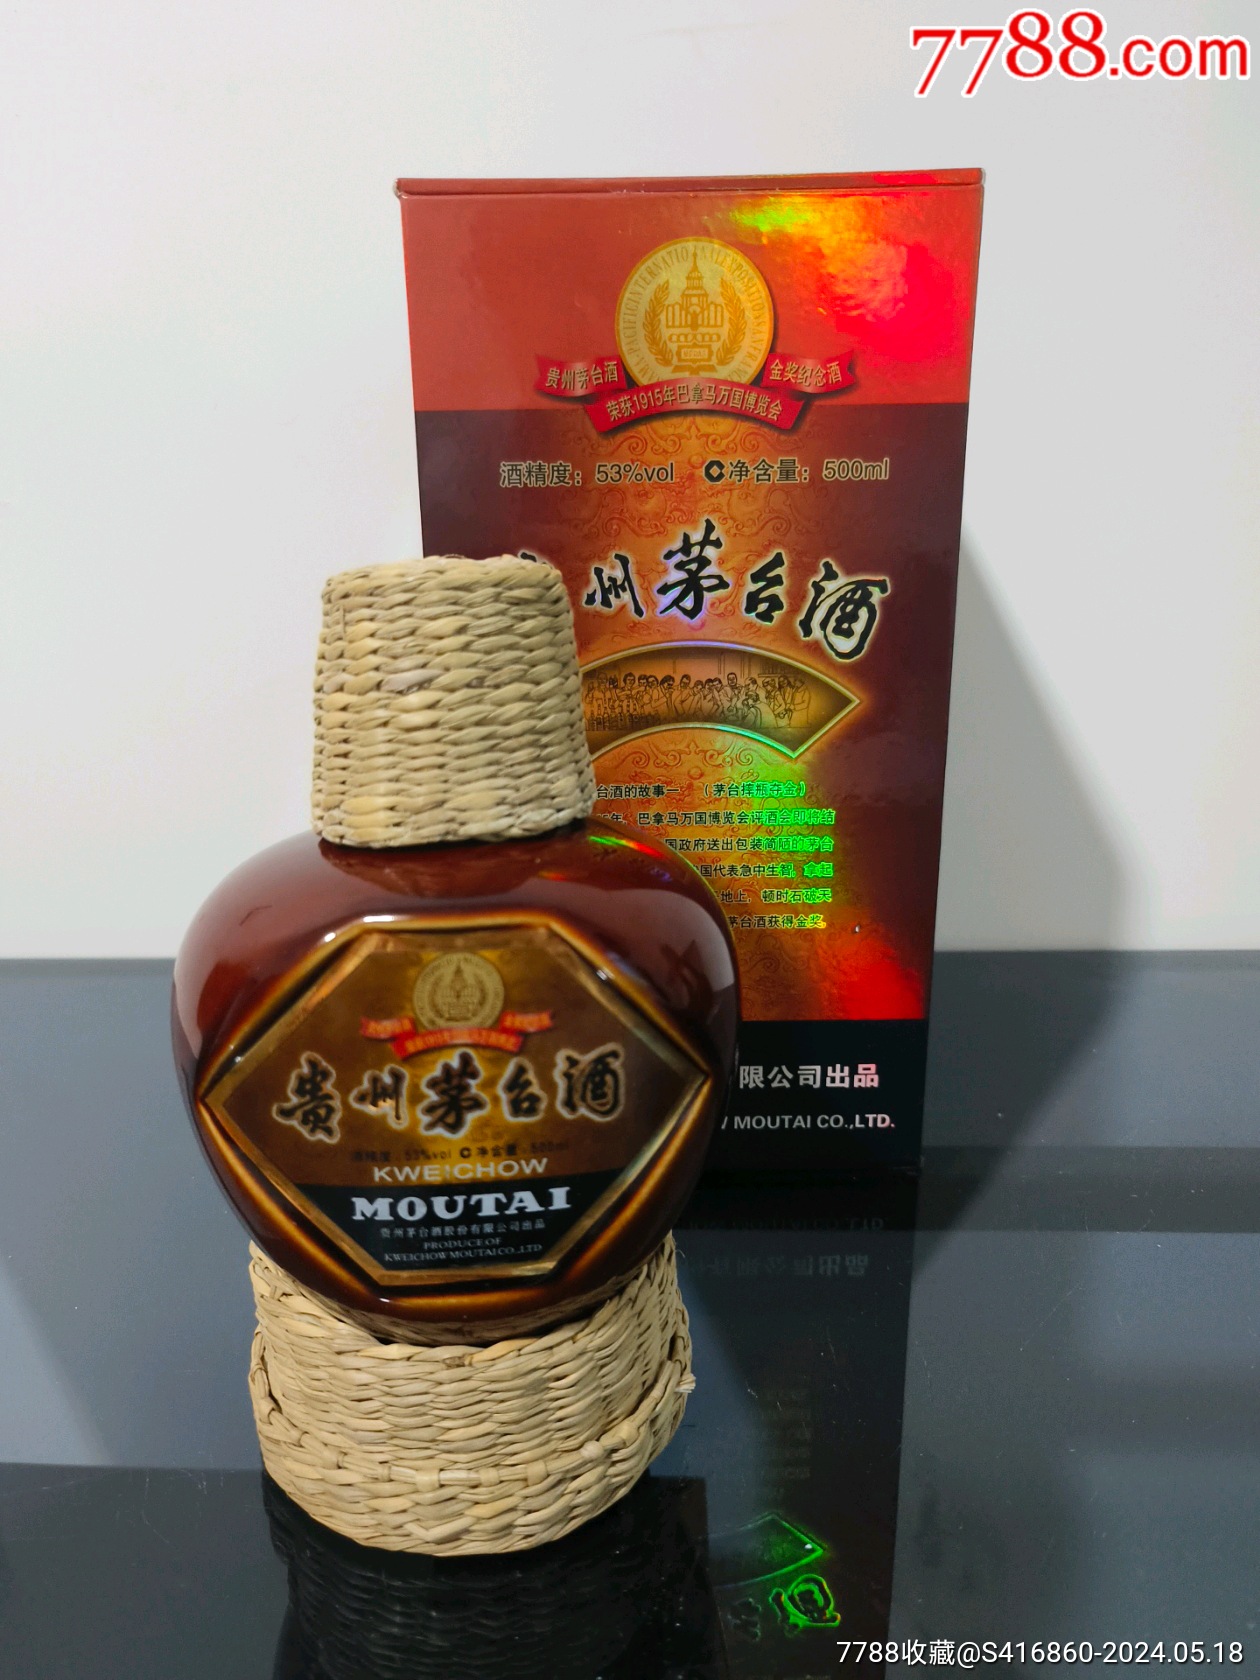 贵州茅台24年飞天空酒瓶￥4009品99贵州国台龙空酒瓶￥2889品99